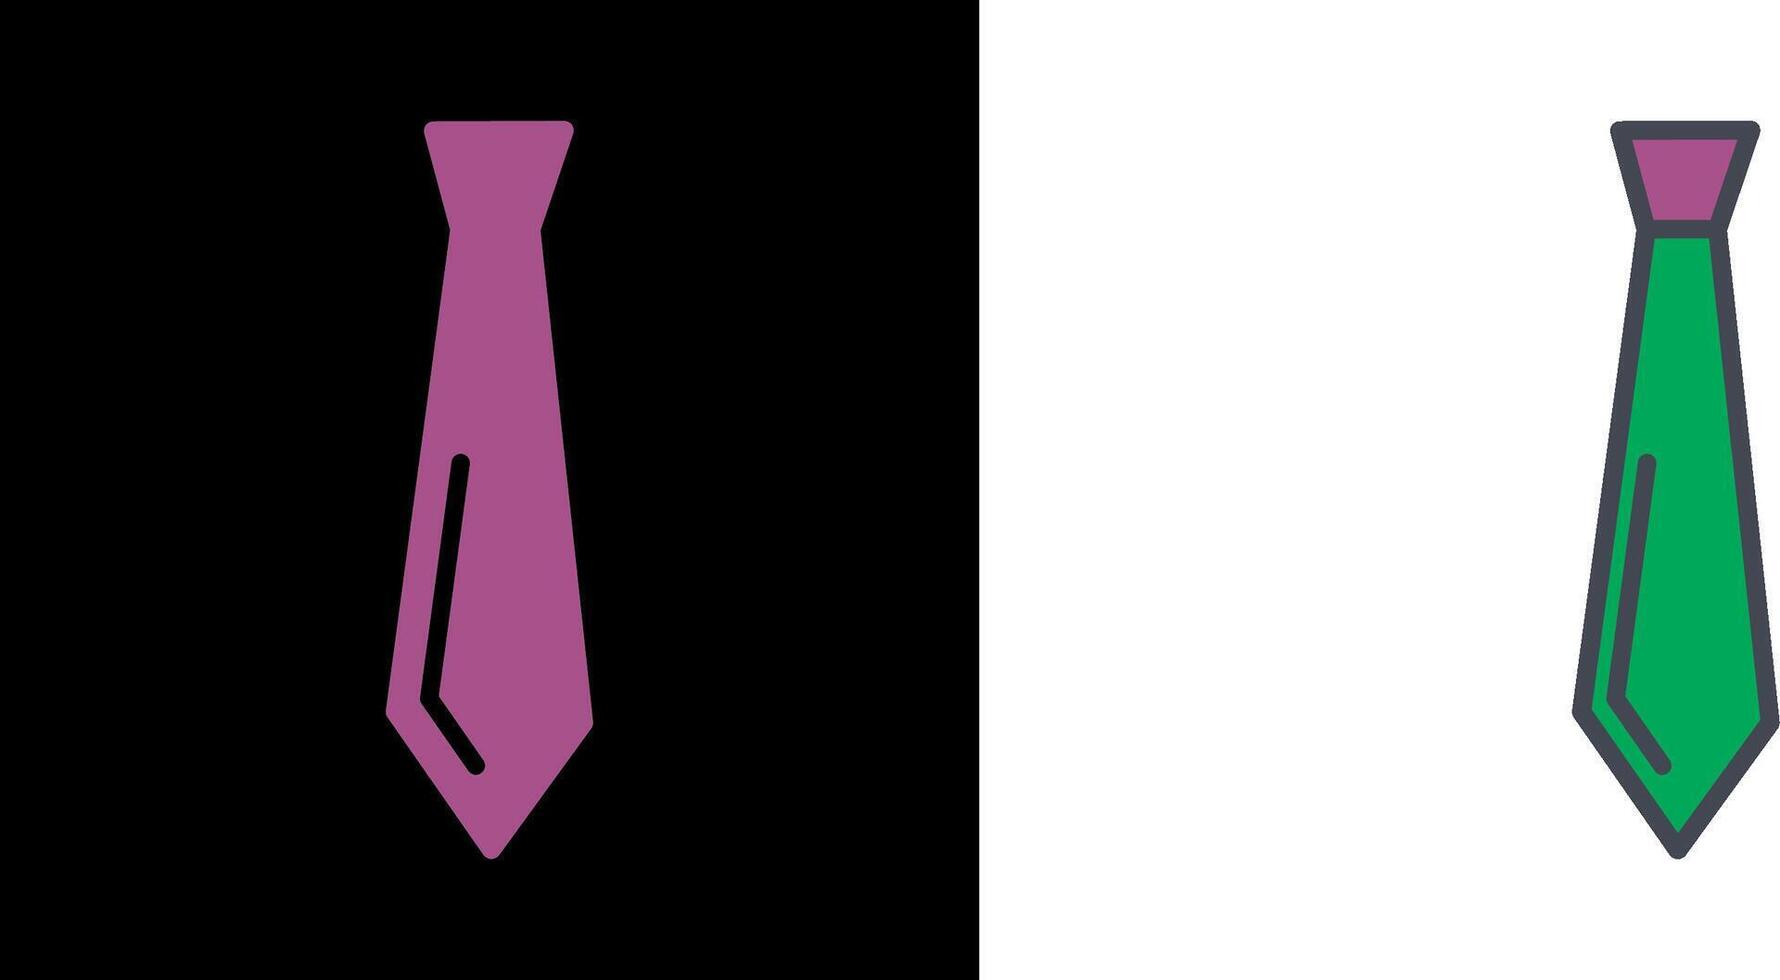 design de ícone de gravata vetor